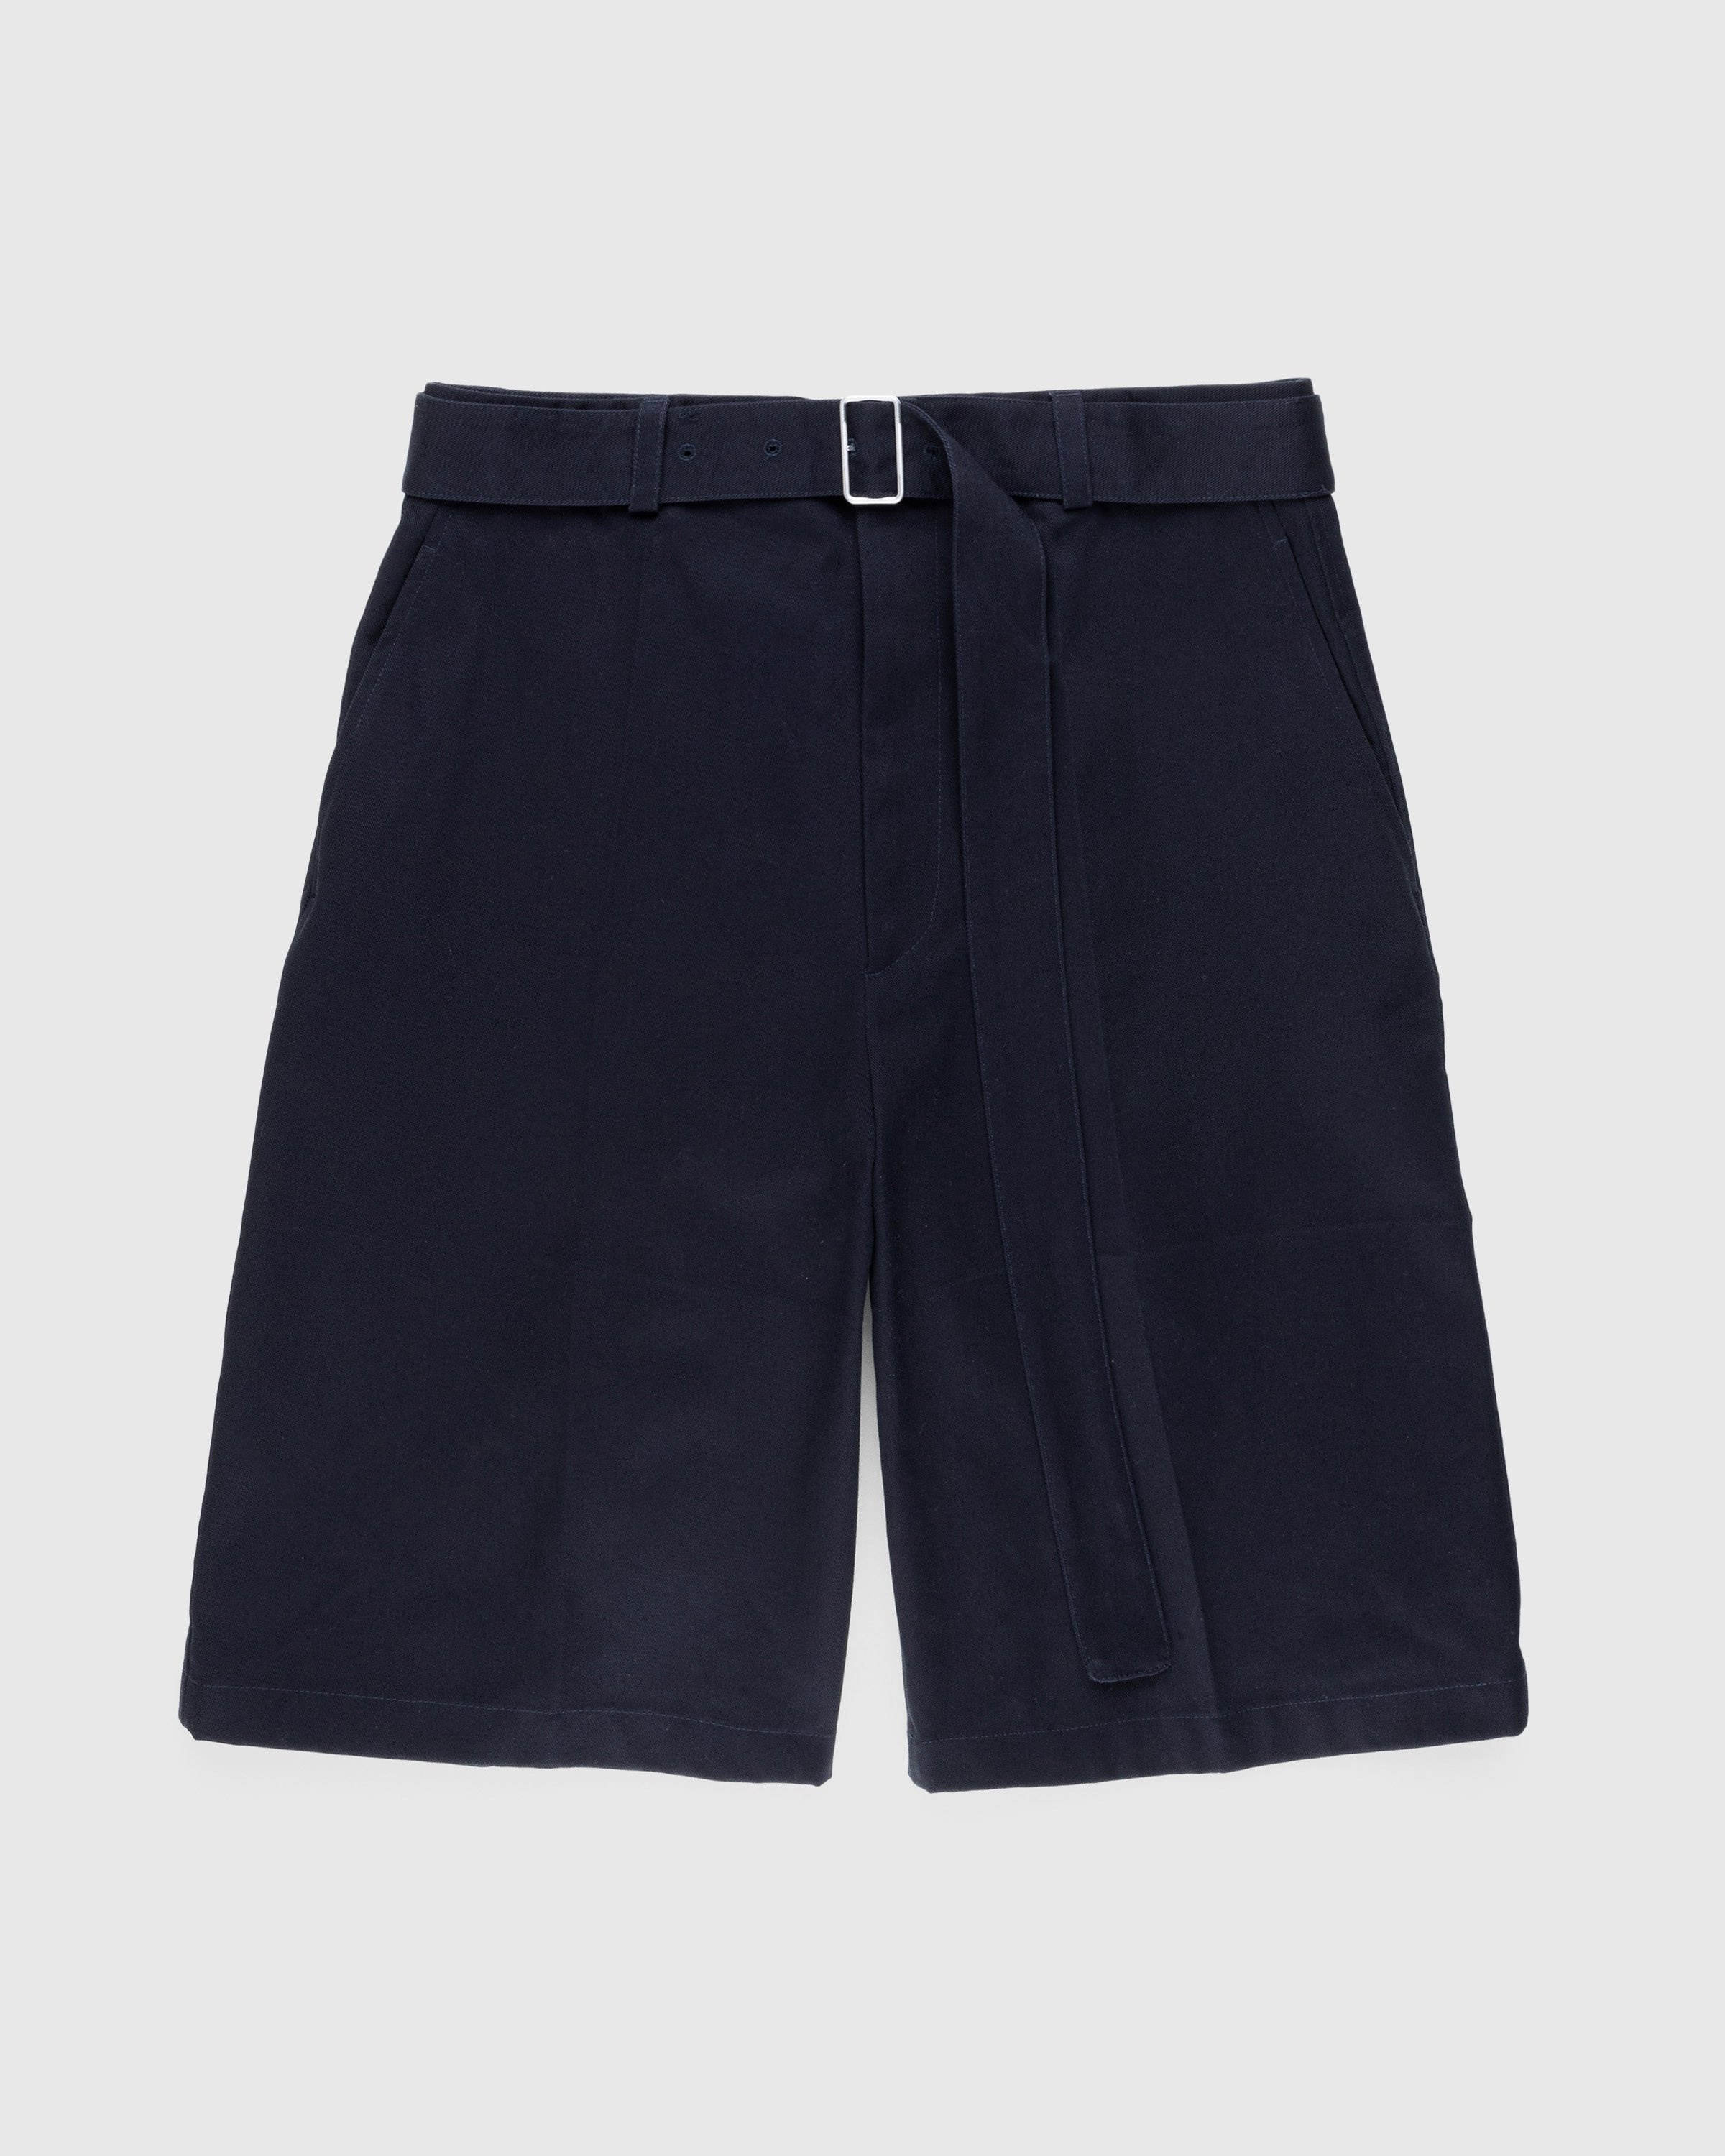 Jil Sander – Belted Shorts Navy